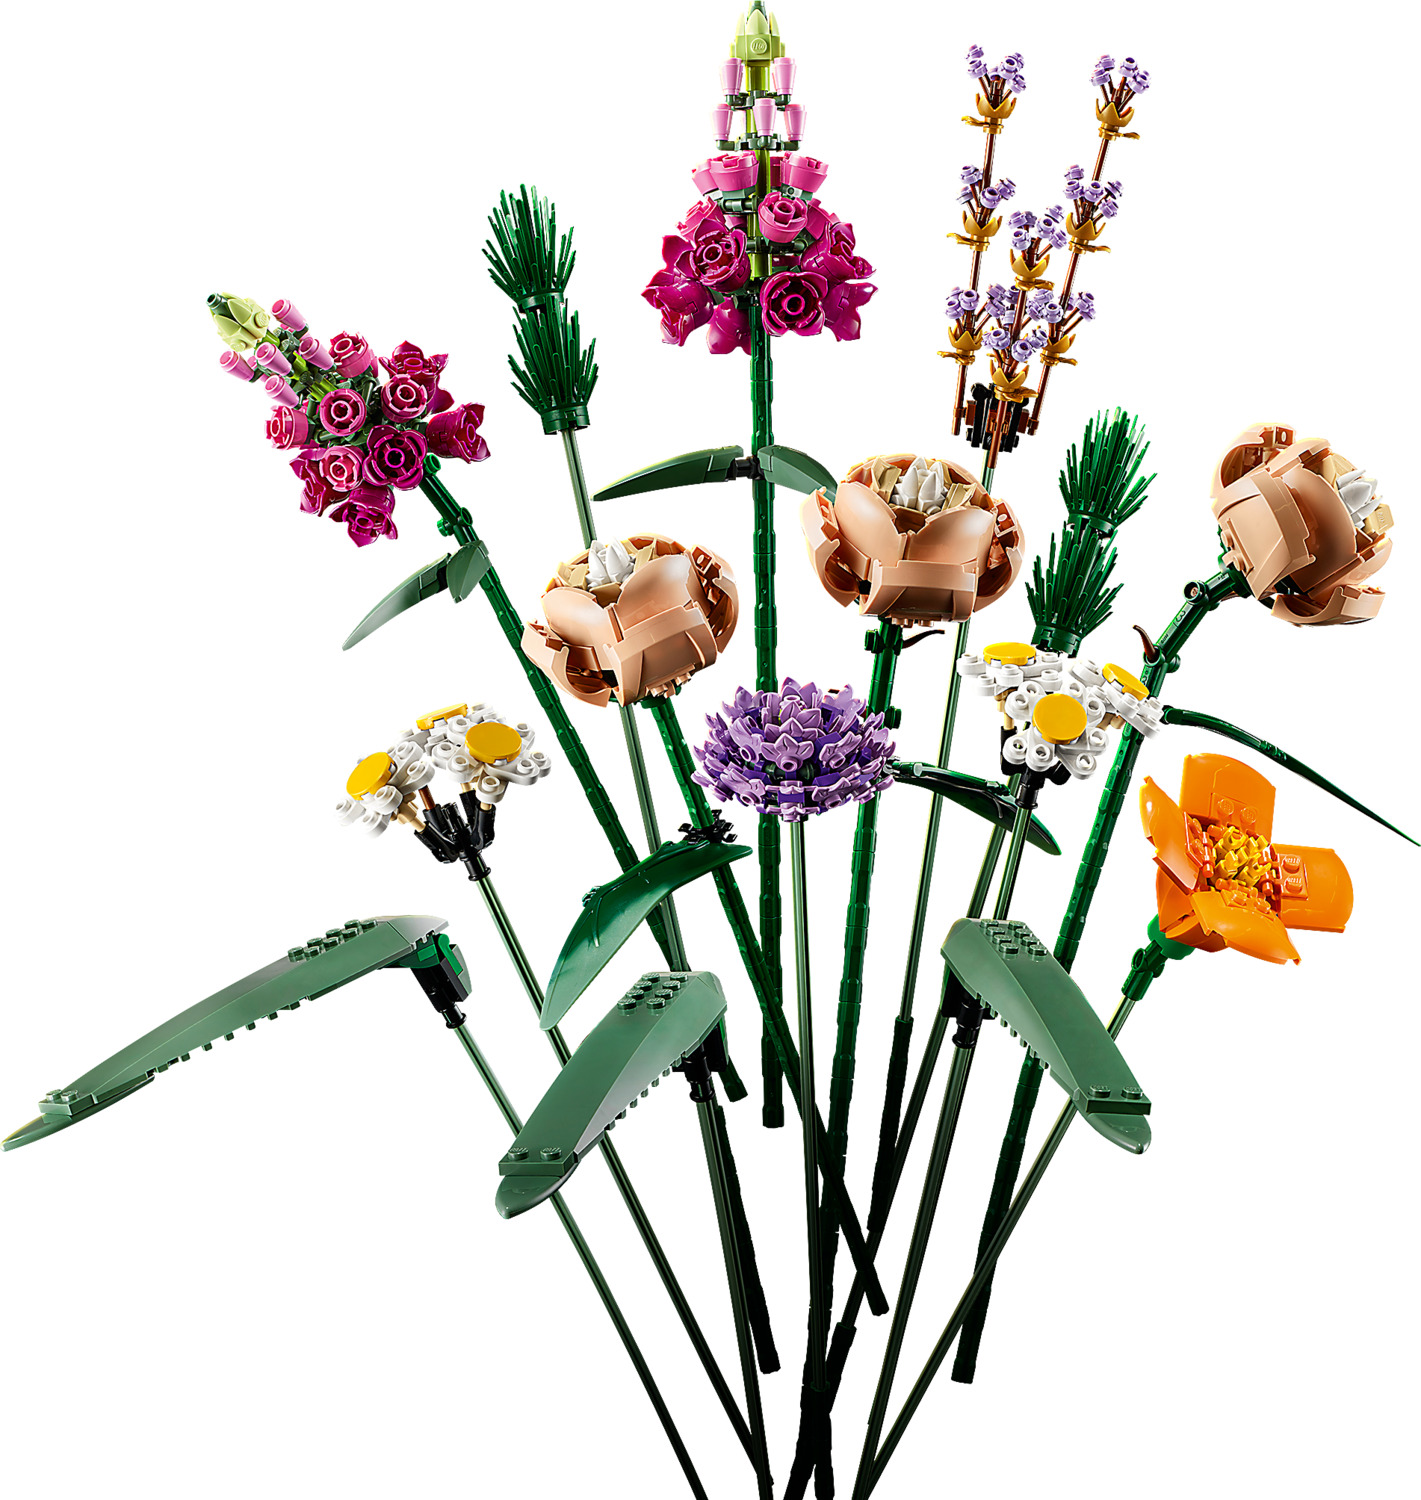 LEGO Creator Expert: Flower Bouquet